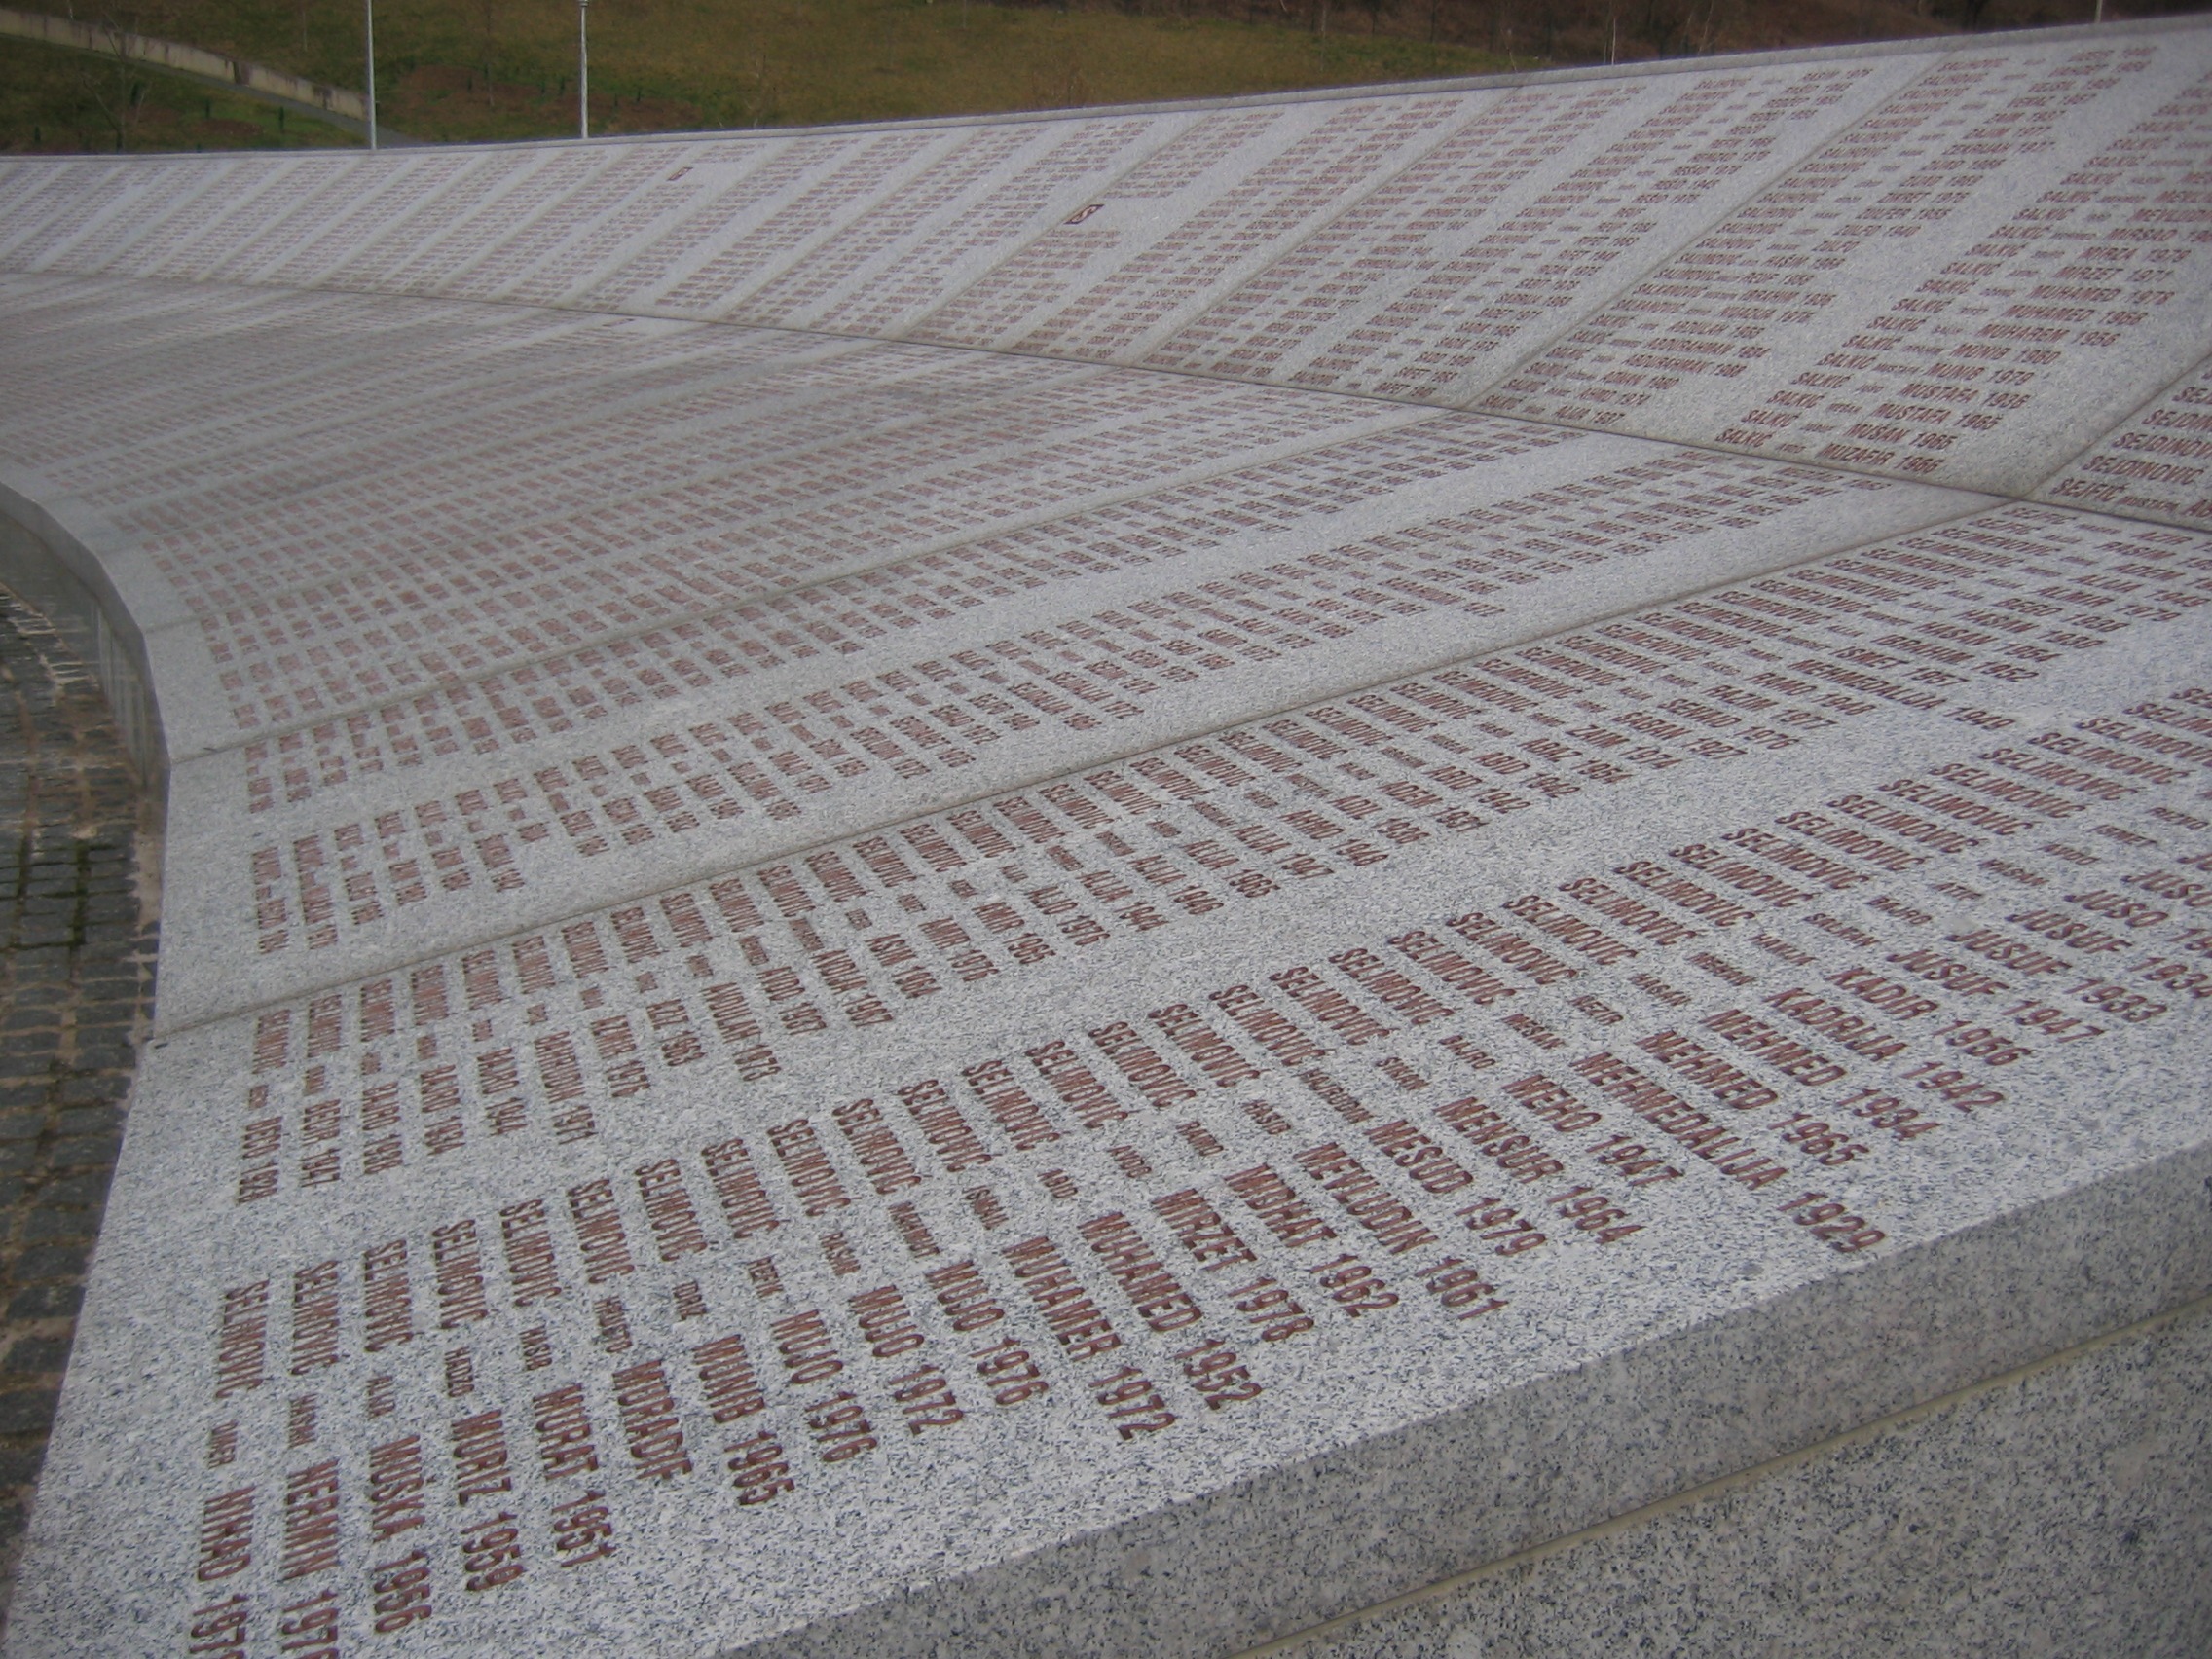 Das Massaker von Srebrenica - Auflistung der Namen von Opfern in der Gedenkstätte Potočari